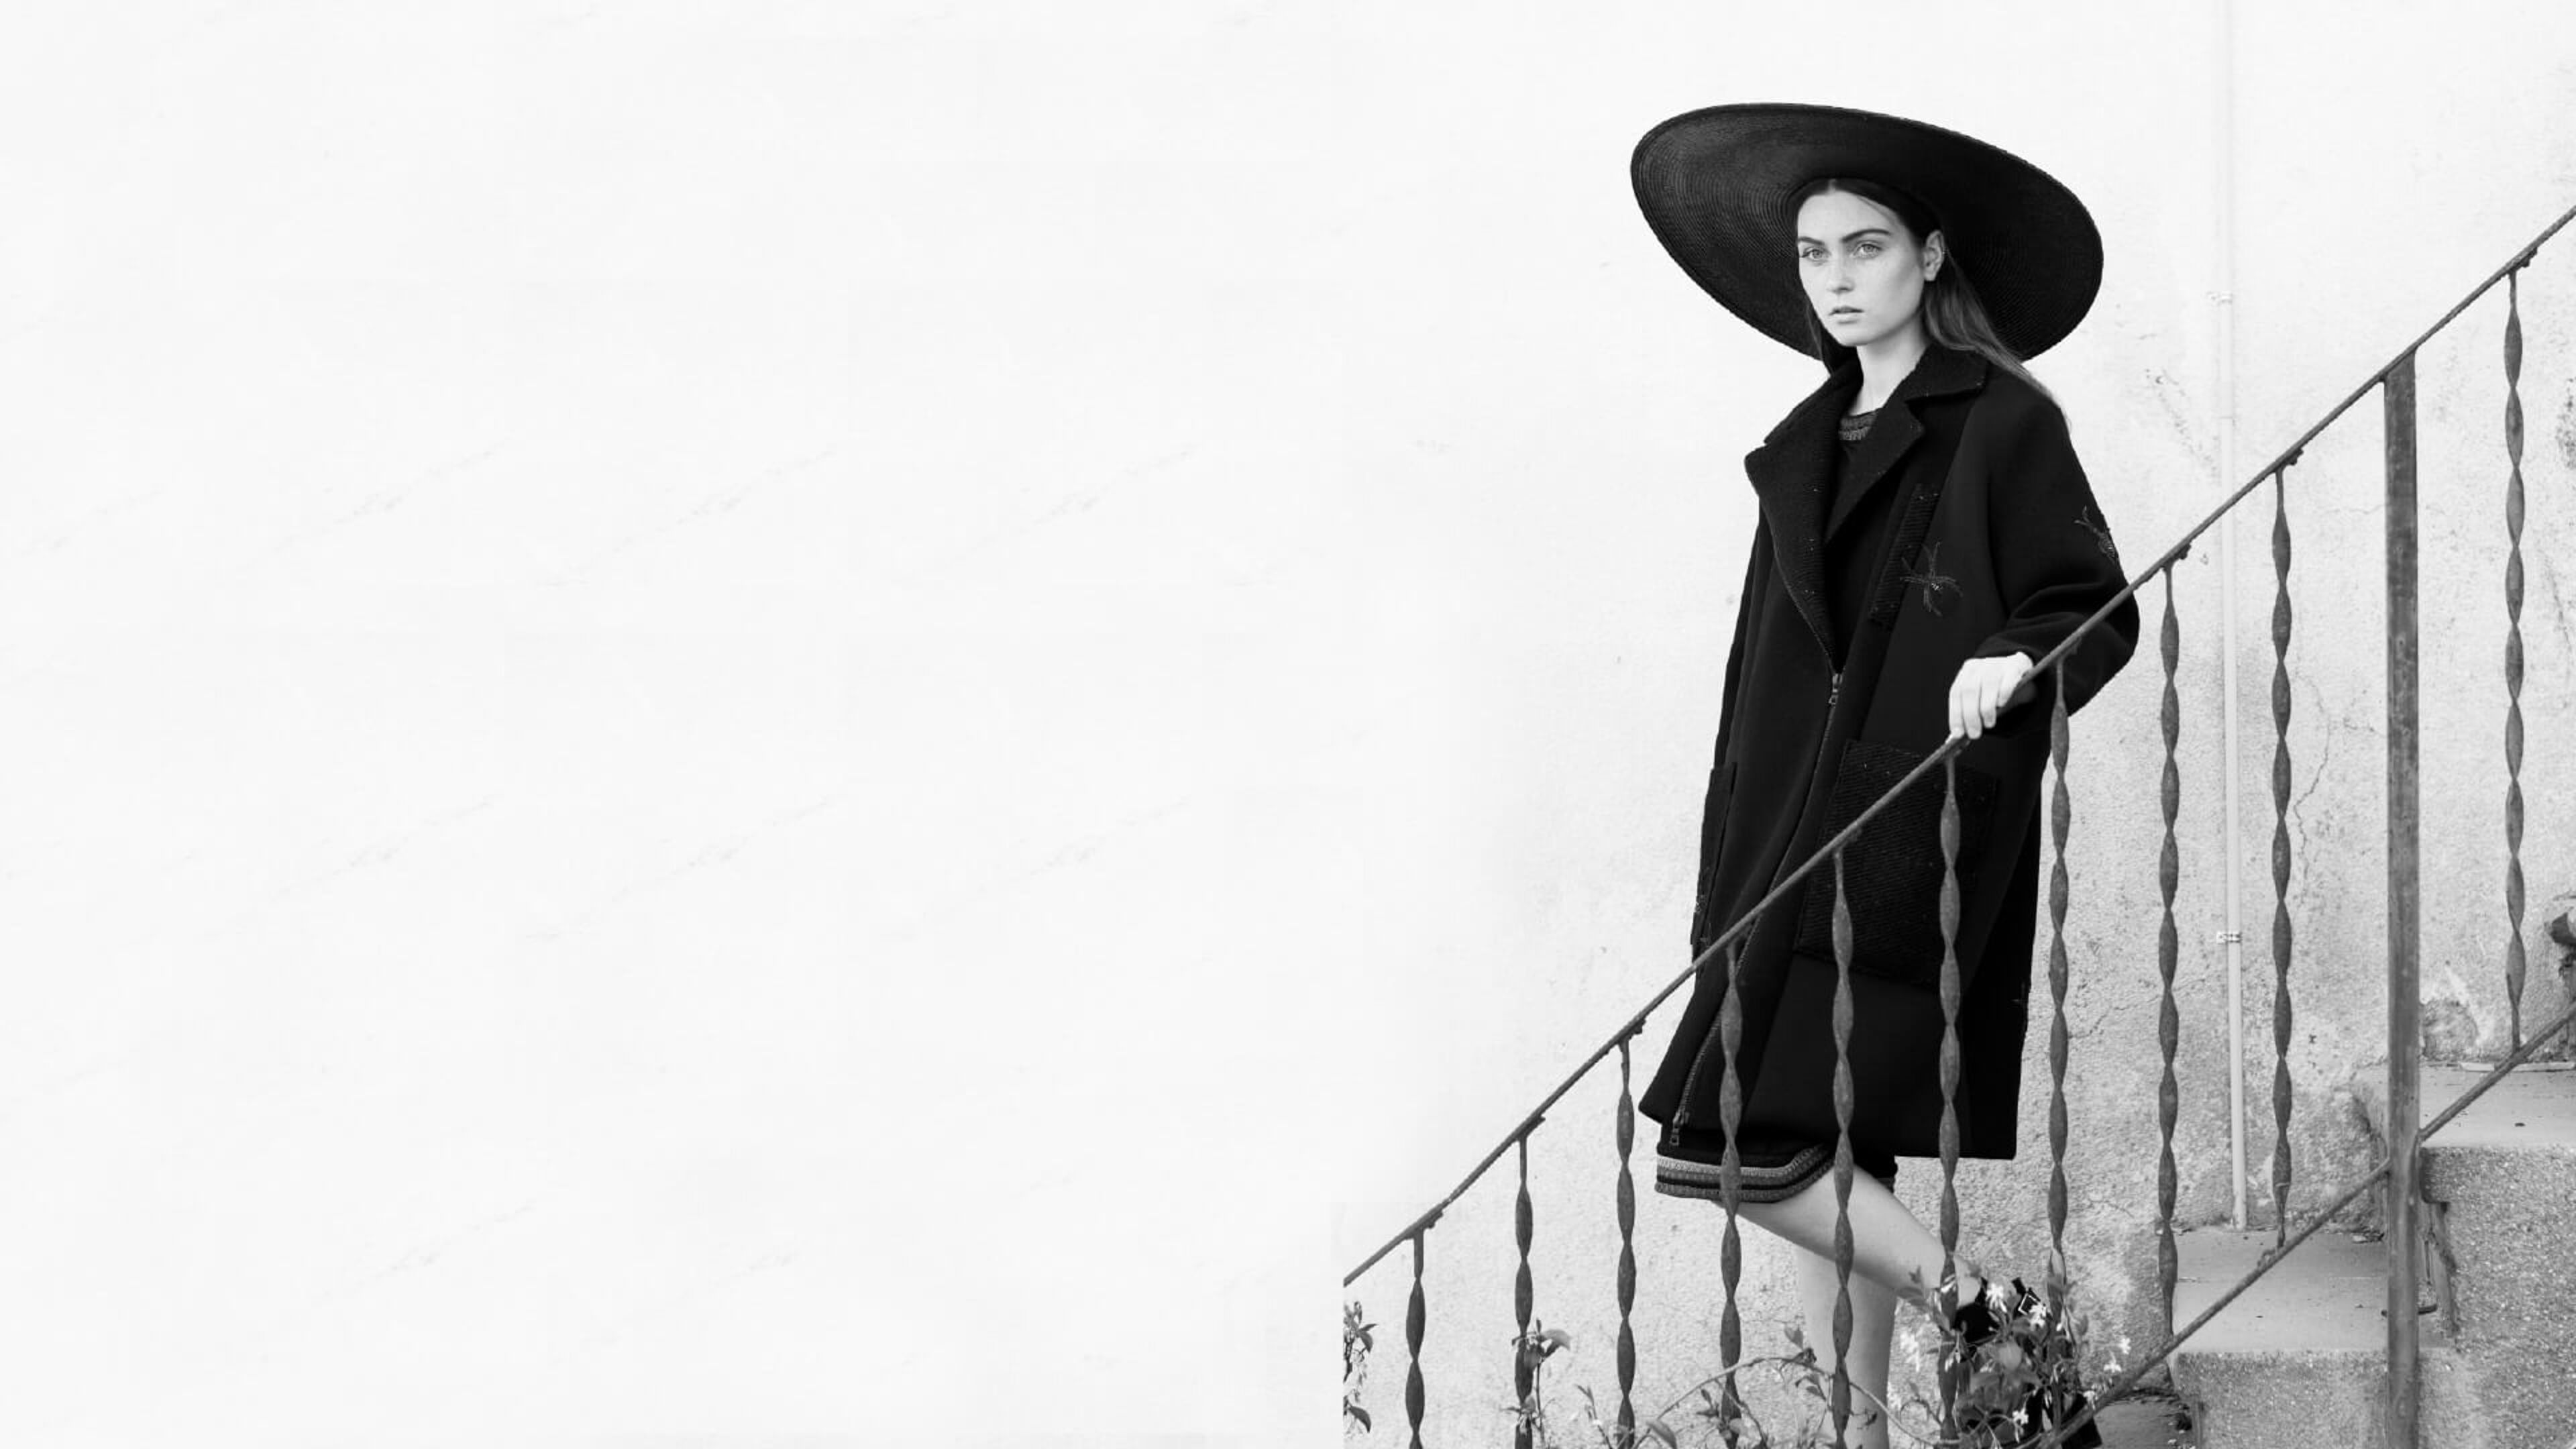 Una modelo con abrigo negro y sombrero de ala ancha posa en una escalera exterior, evocando un estilo monocromo atemporal.